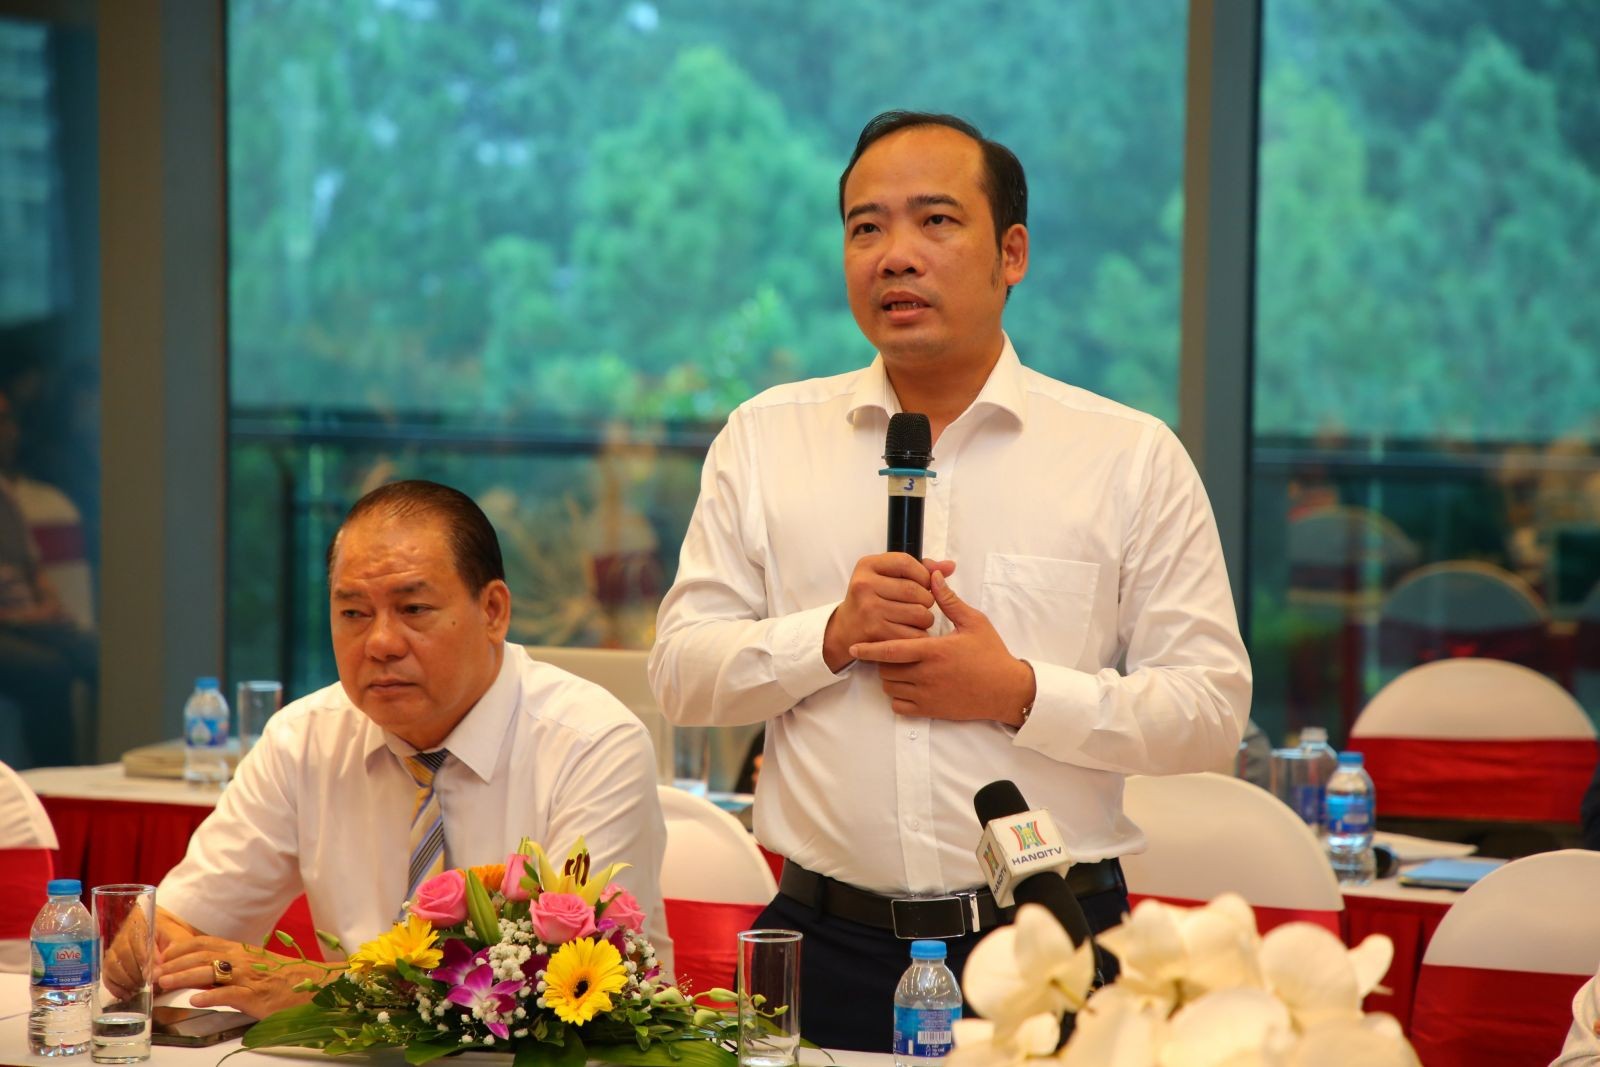 
Ông Nguyễn Anh Quê, Chủ tịch Tập đoàn G6, Ủy viên Ban chấp hành Hiệp hội Bất động sản Việt Nam
